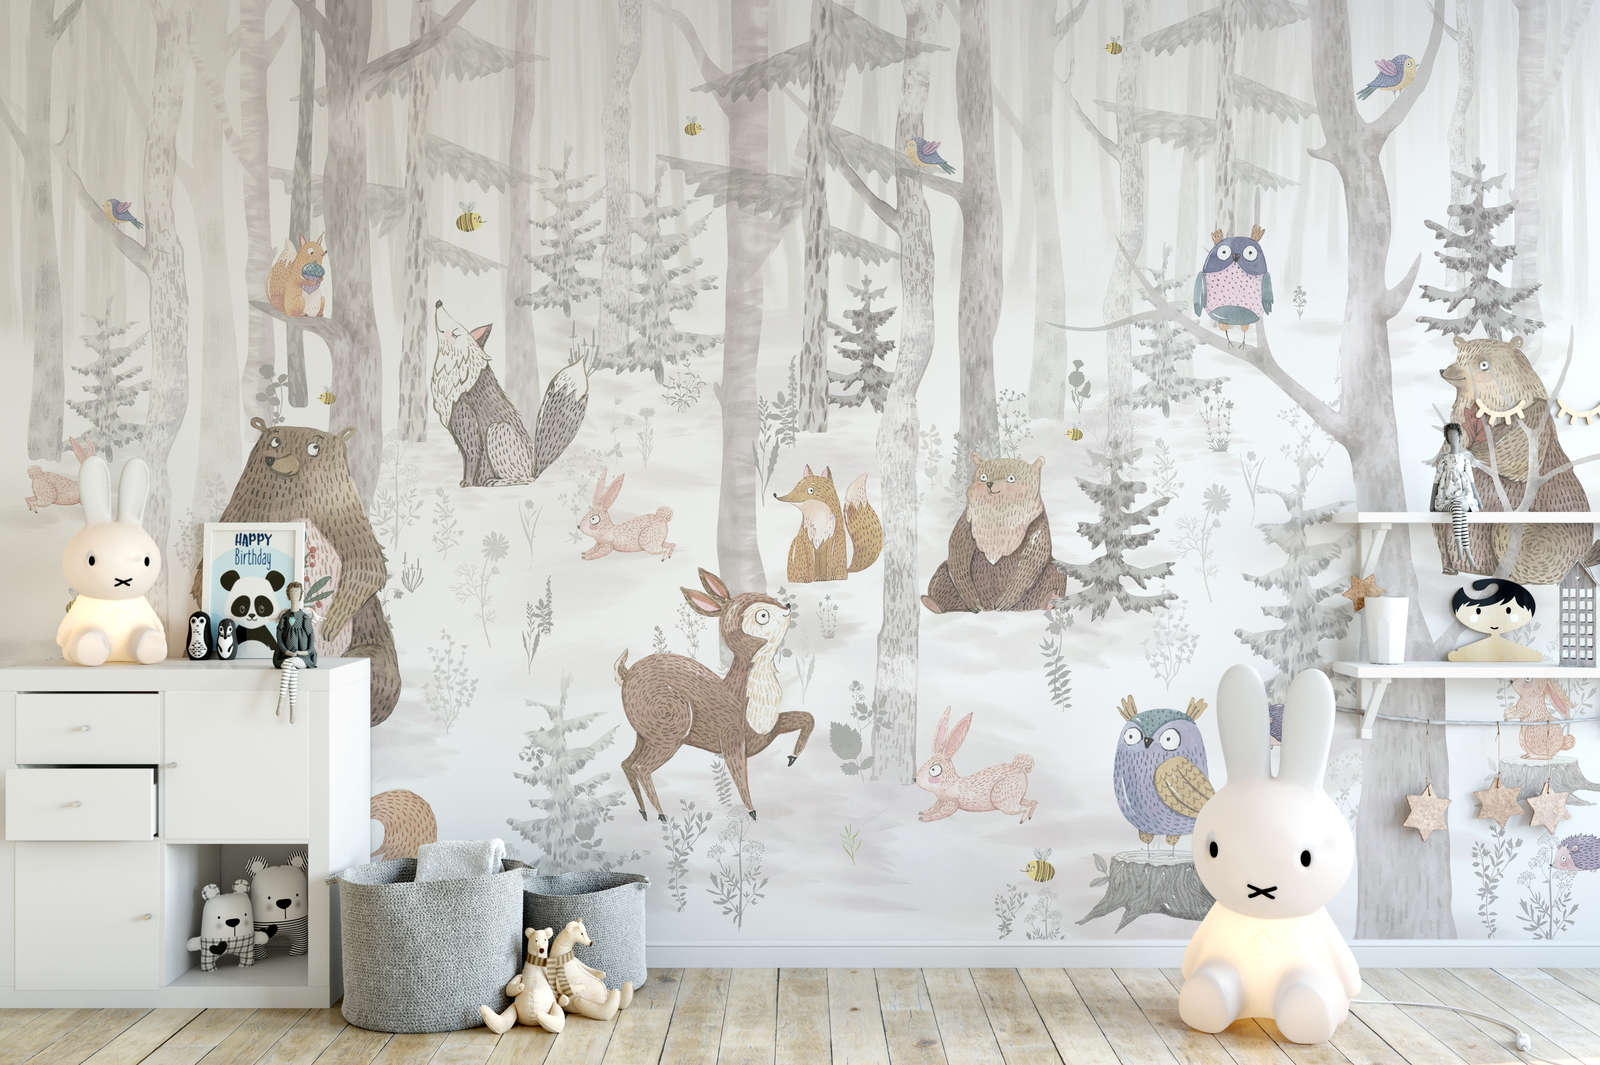             papiers peints à impression numérique forêt enchantée avec animaux - intissé lisse & nacré
        